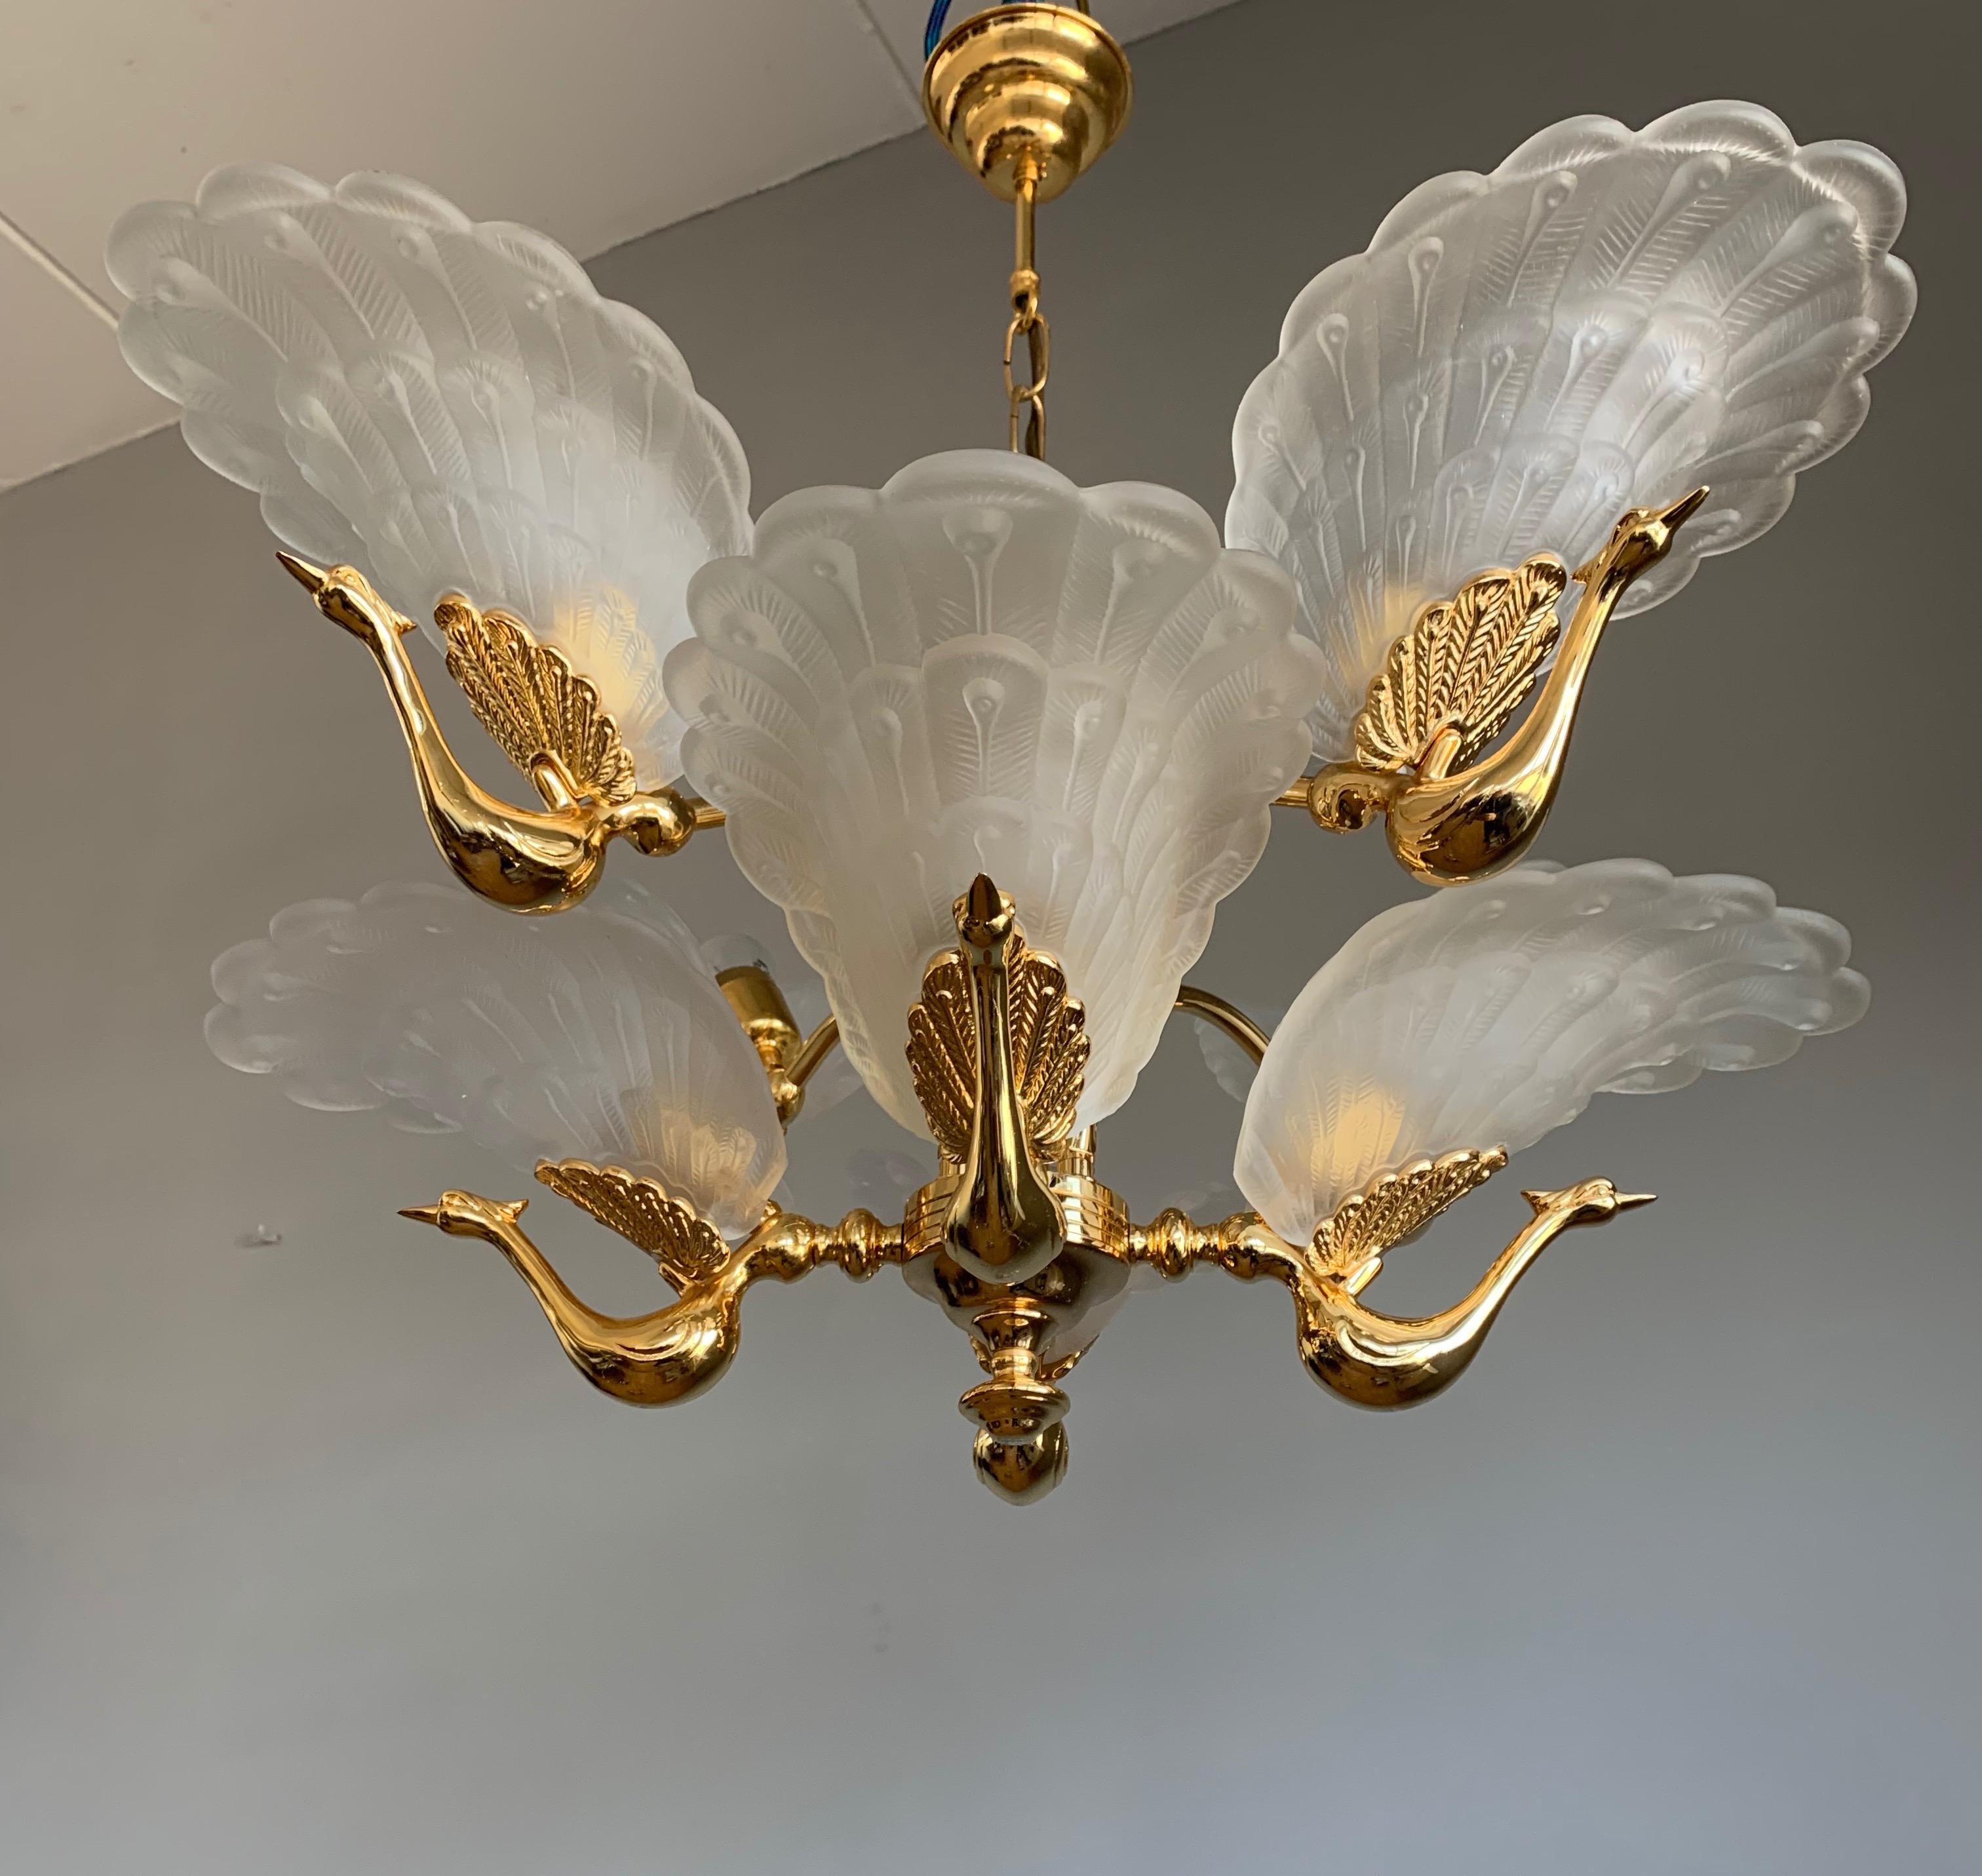 Rare Midcentury Chandelier / Pendant w. Golden Bronze & Glass Peacock Sculptures 1